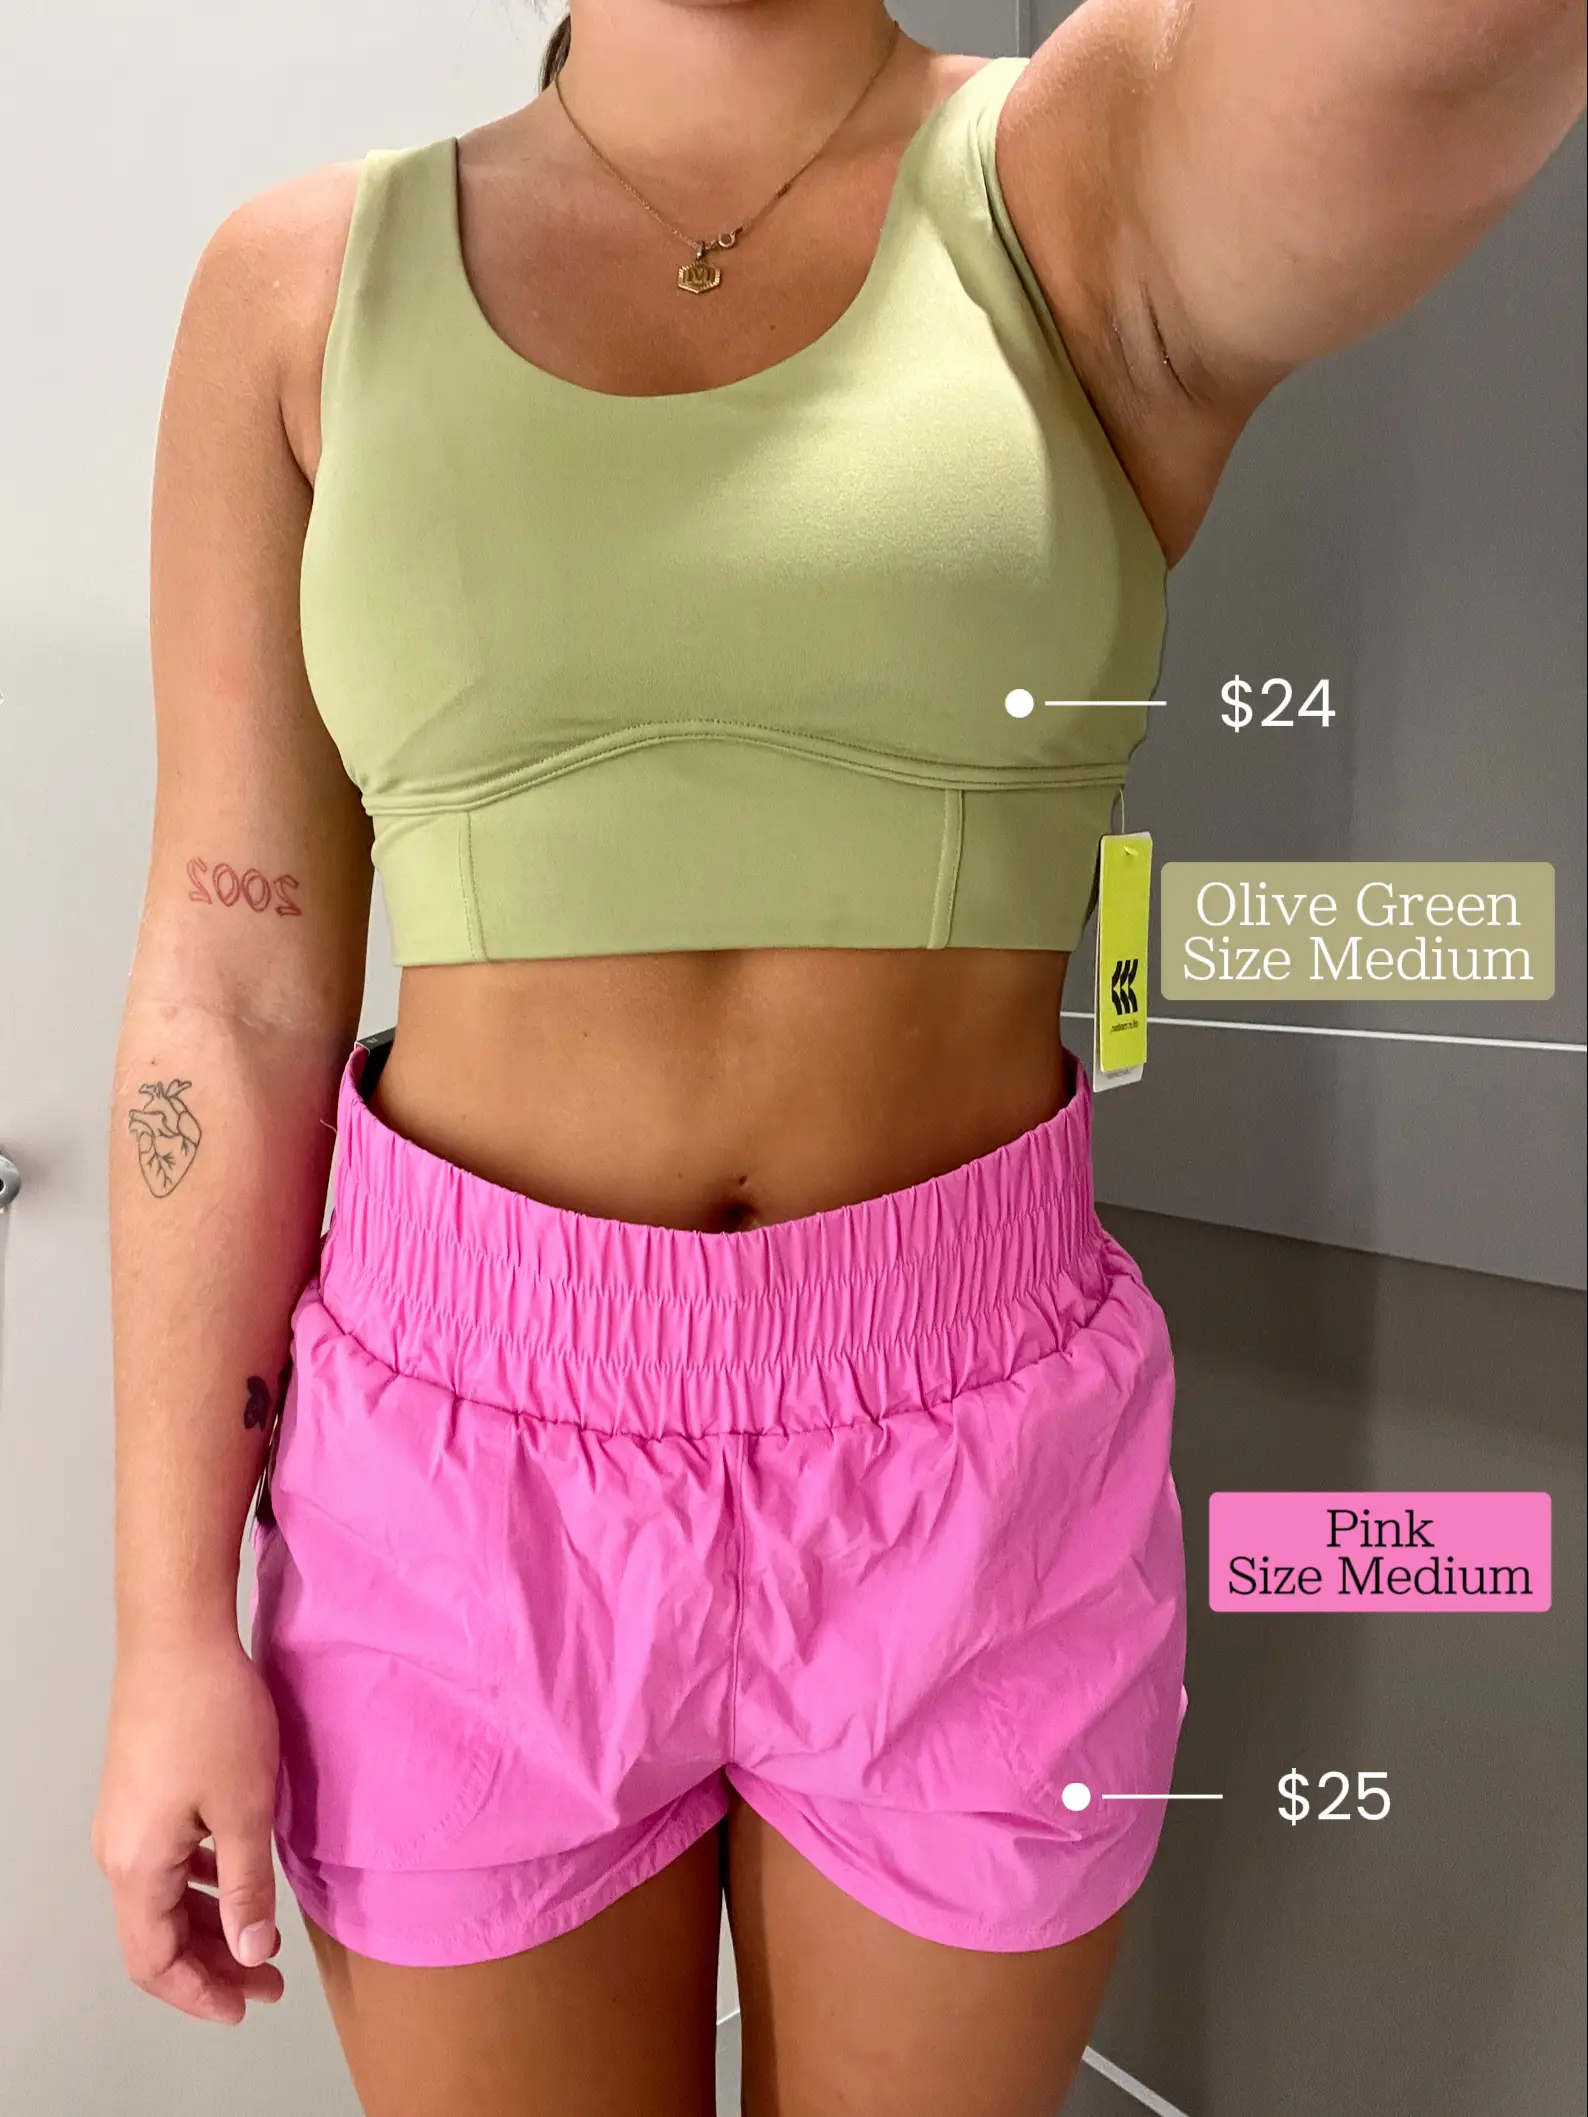 Target JoyLab Activewear try on✨ Cropped top, sports bra, leggings 10/